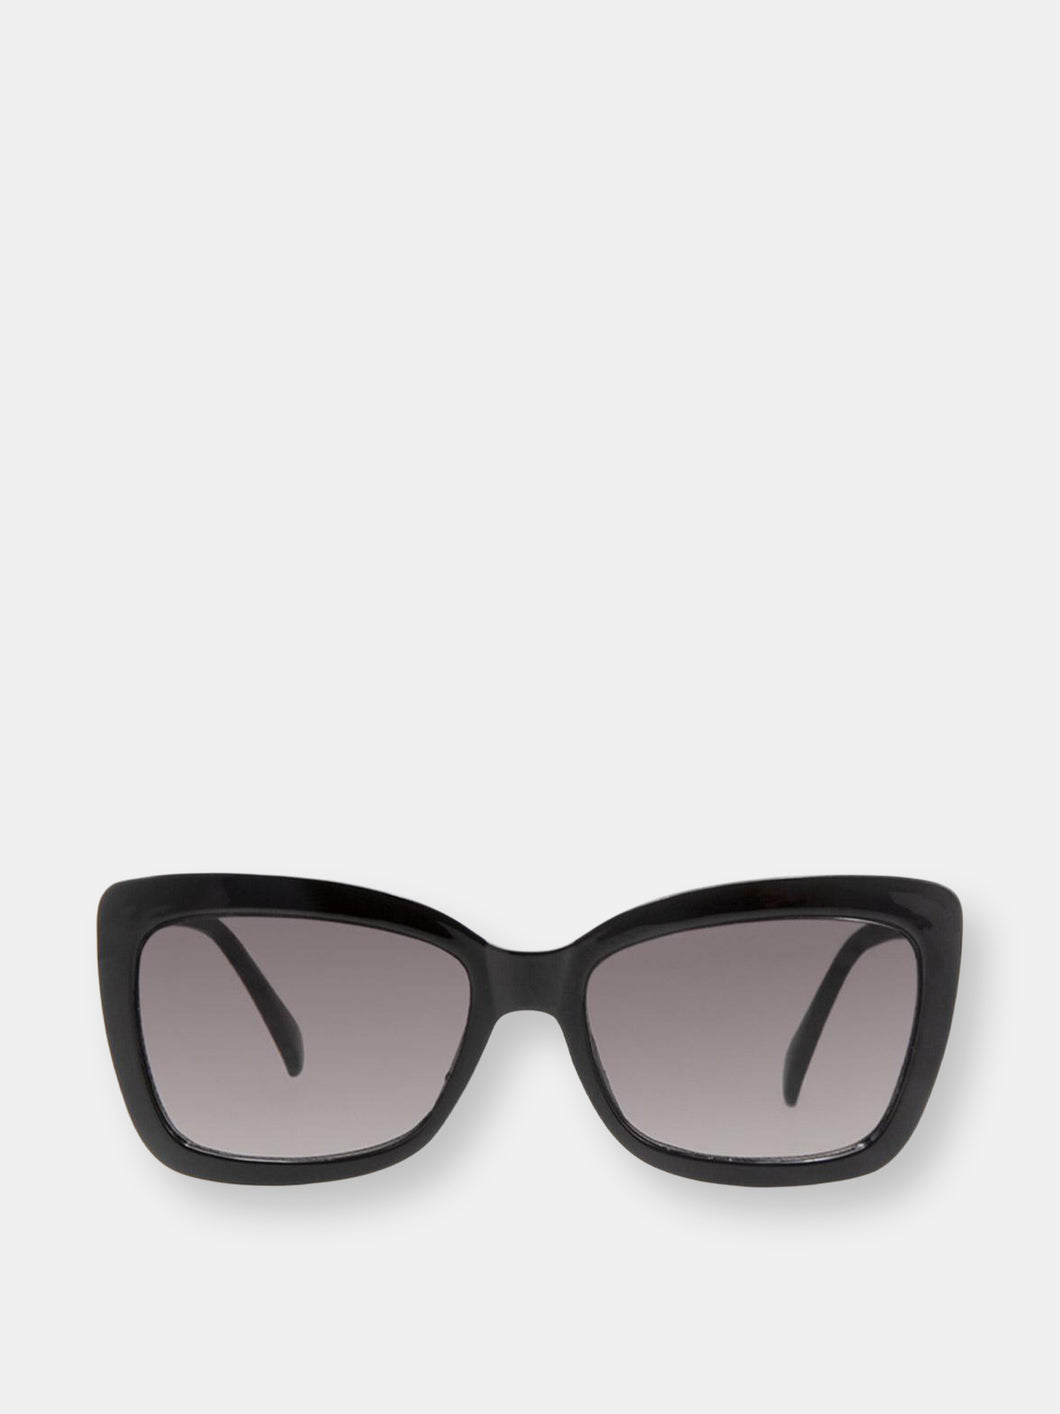 Carpi Sunglasses